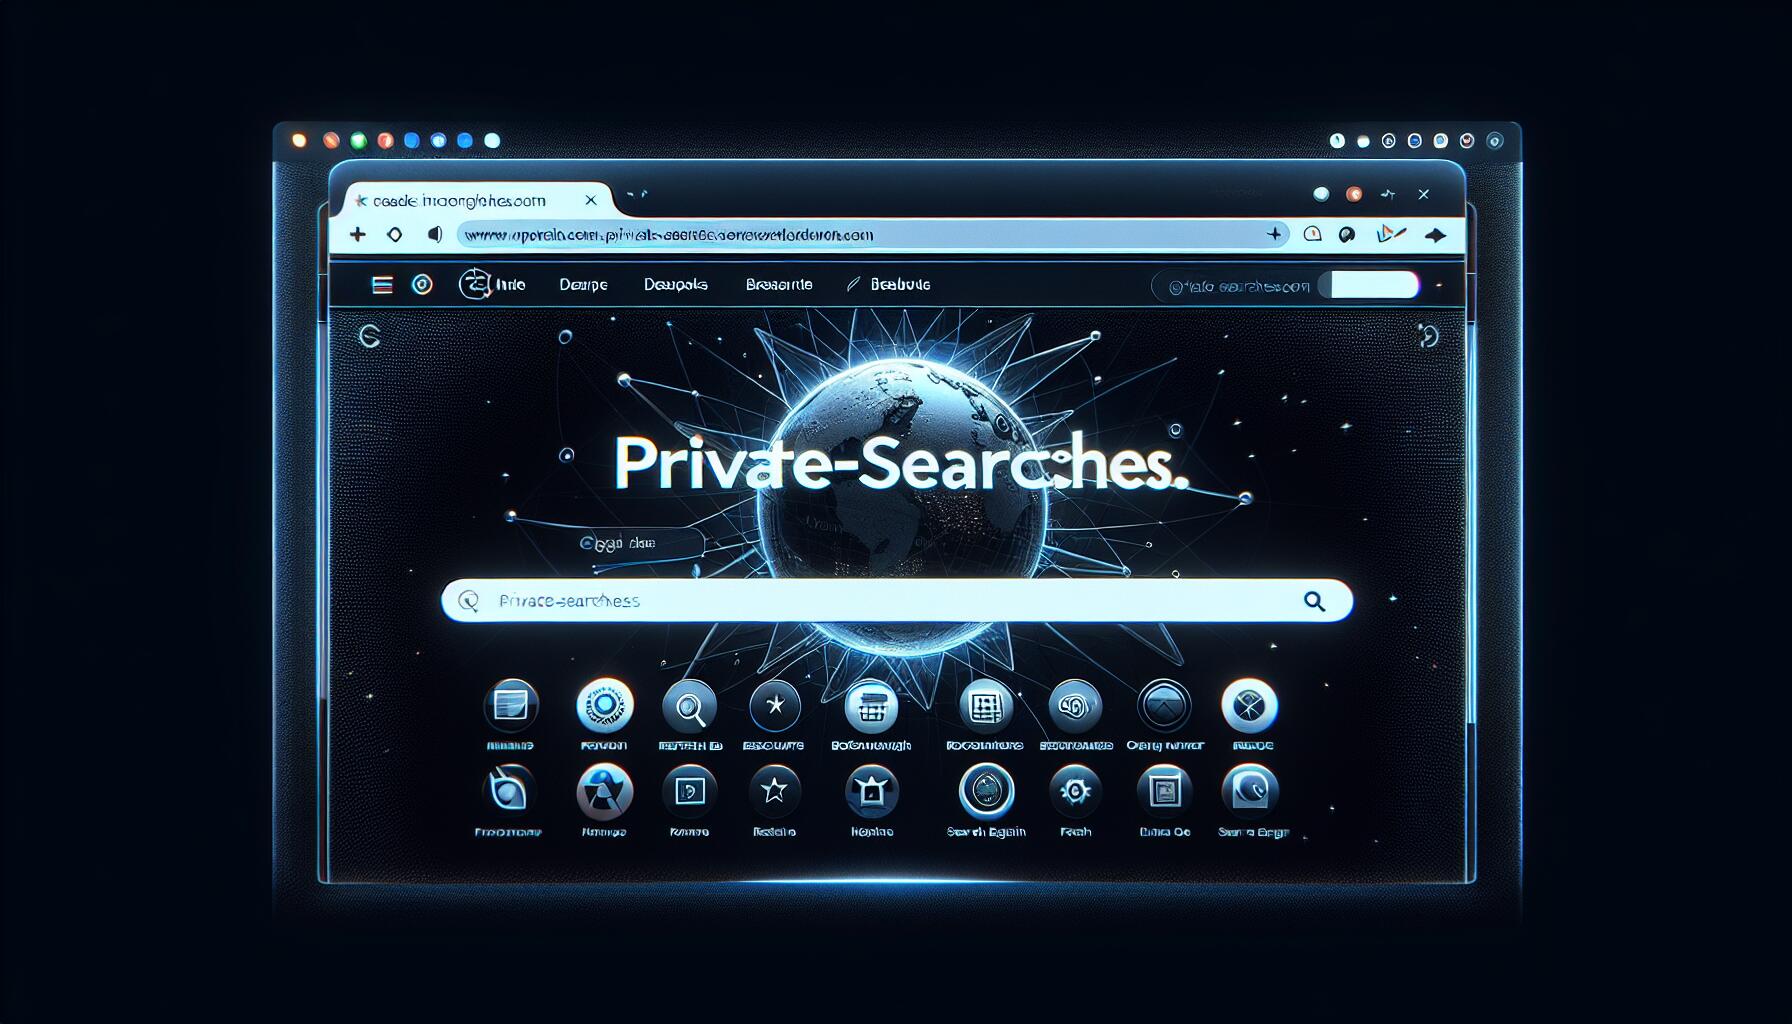 private-searches.com